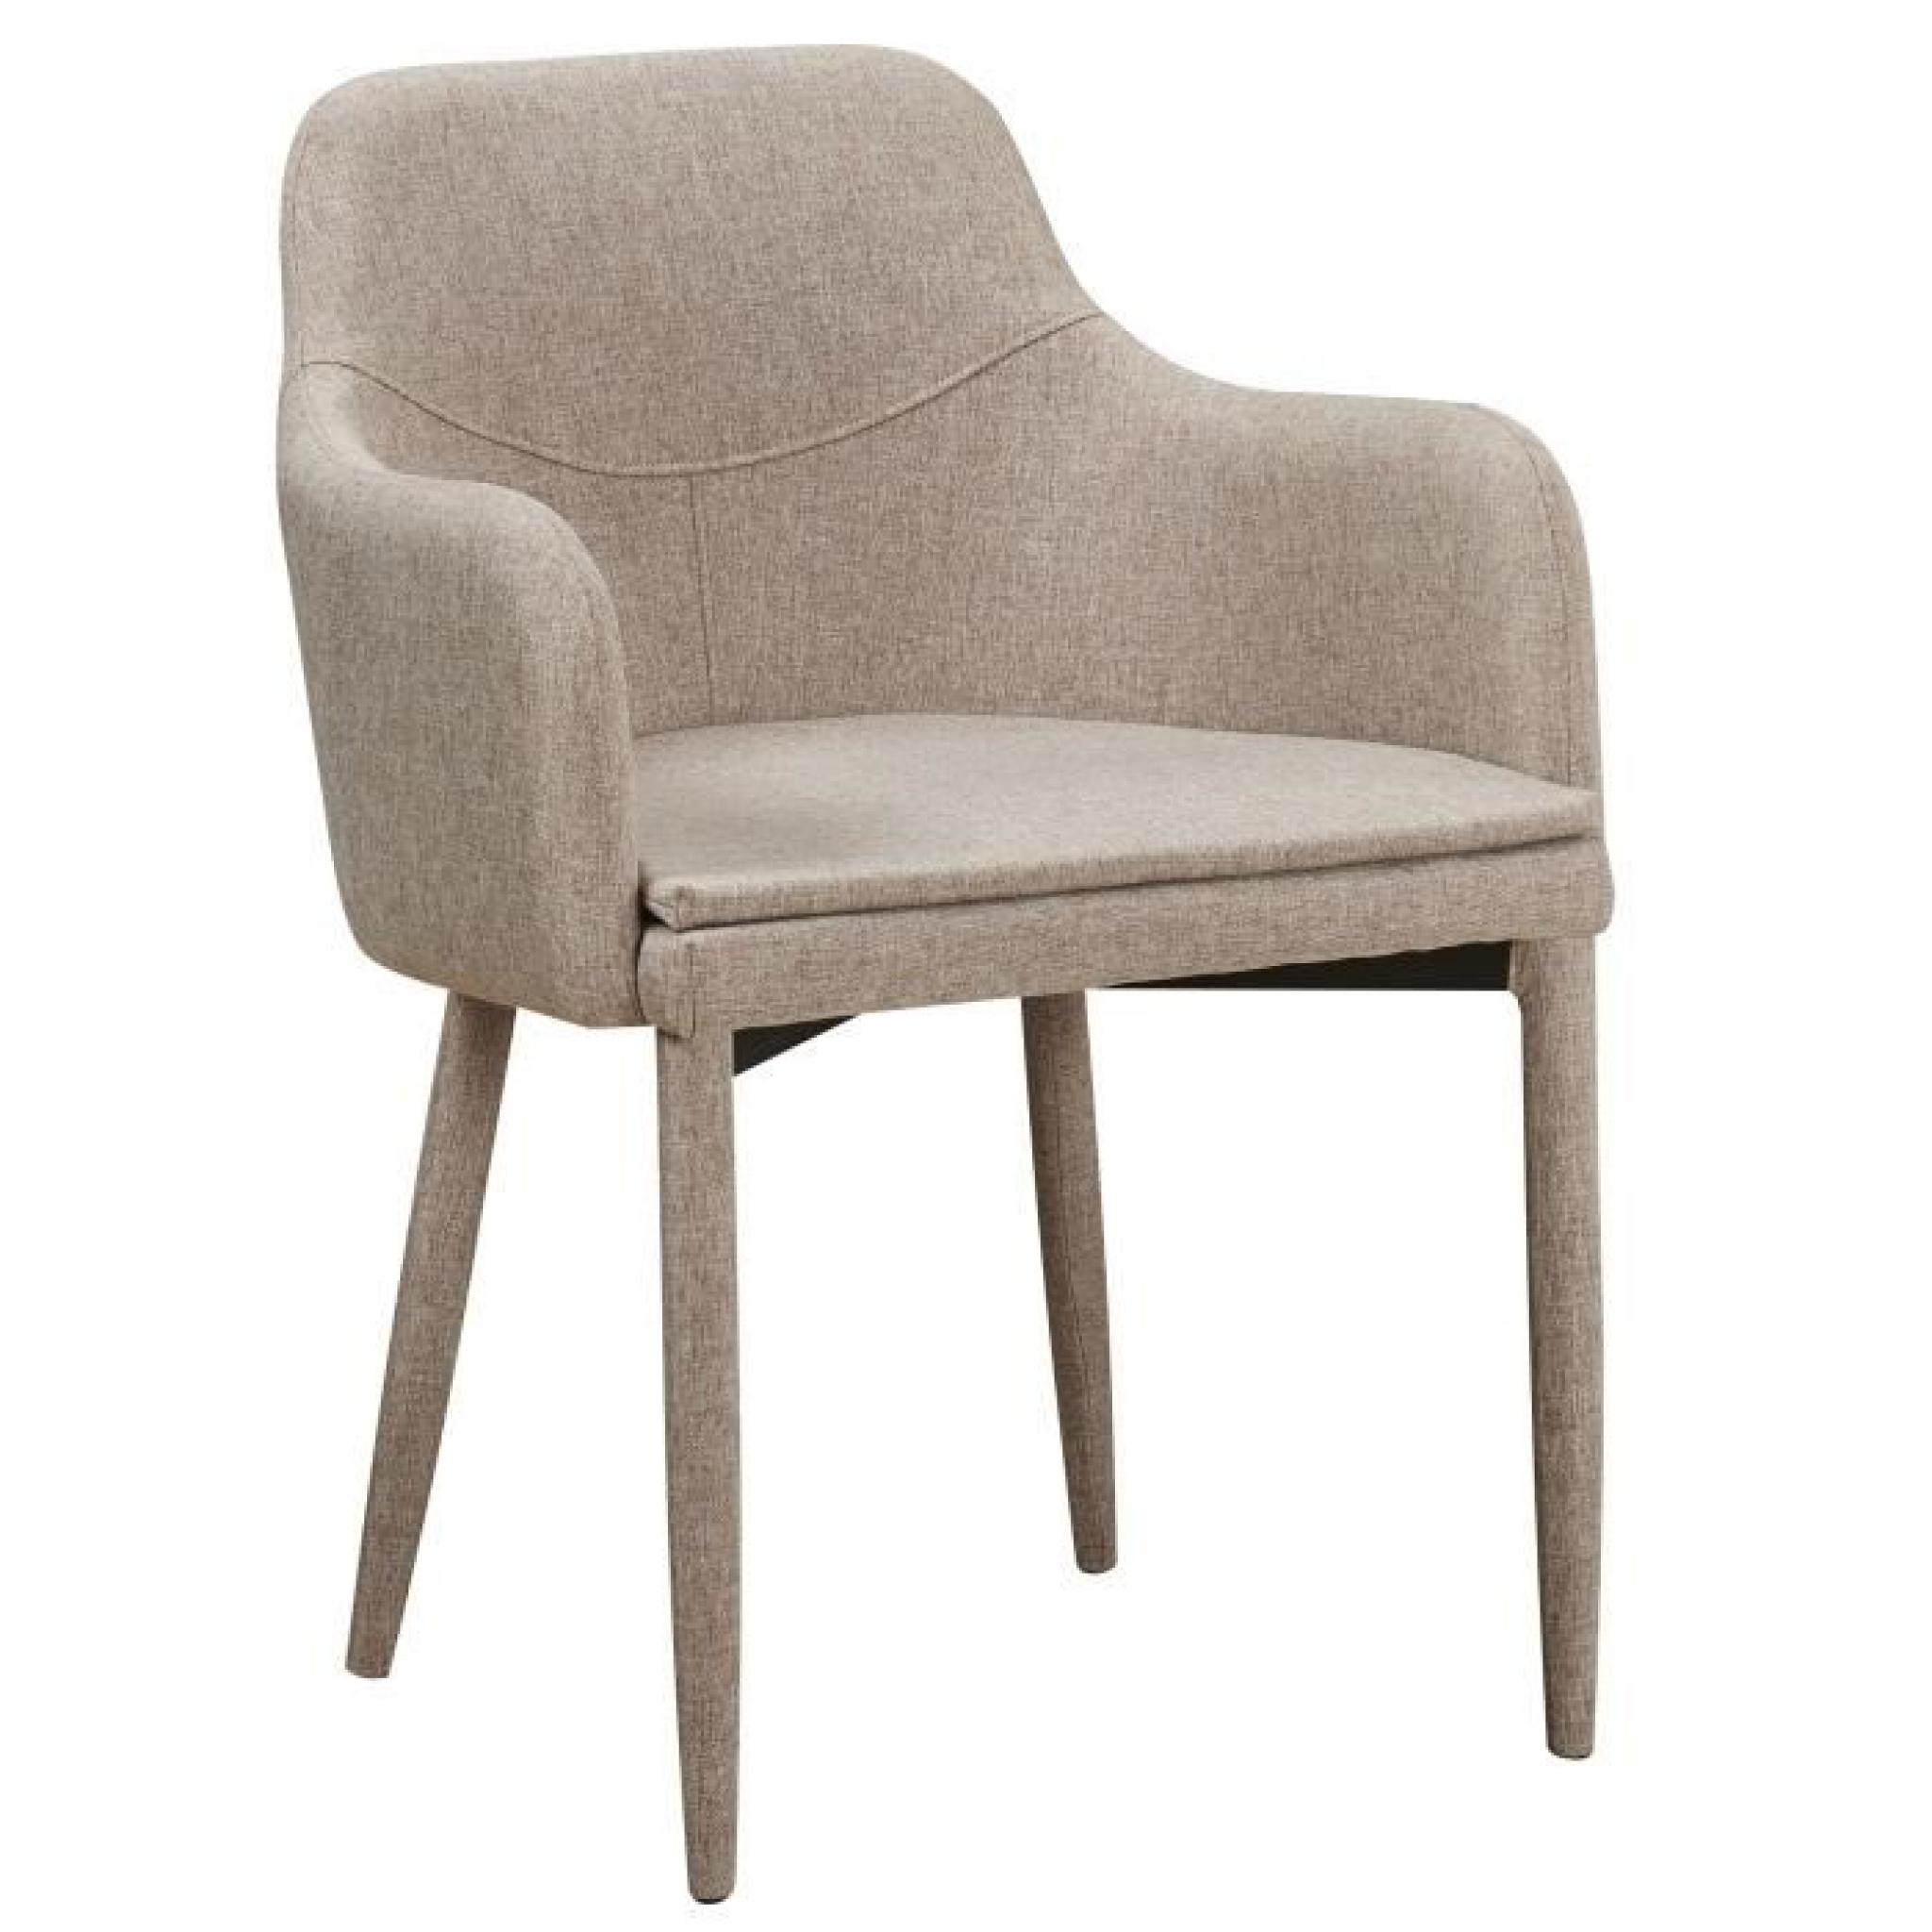 Chaise en tissus design avec accoudoirs coloris beige